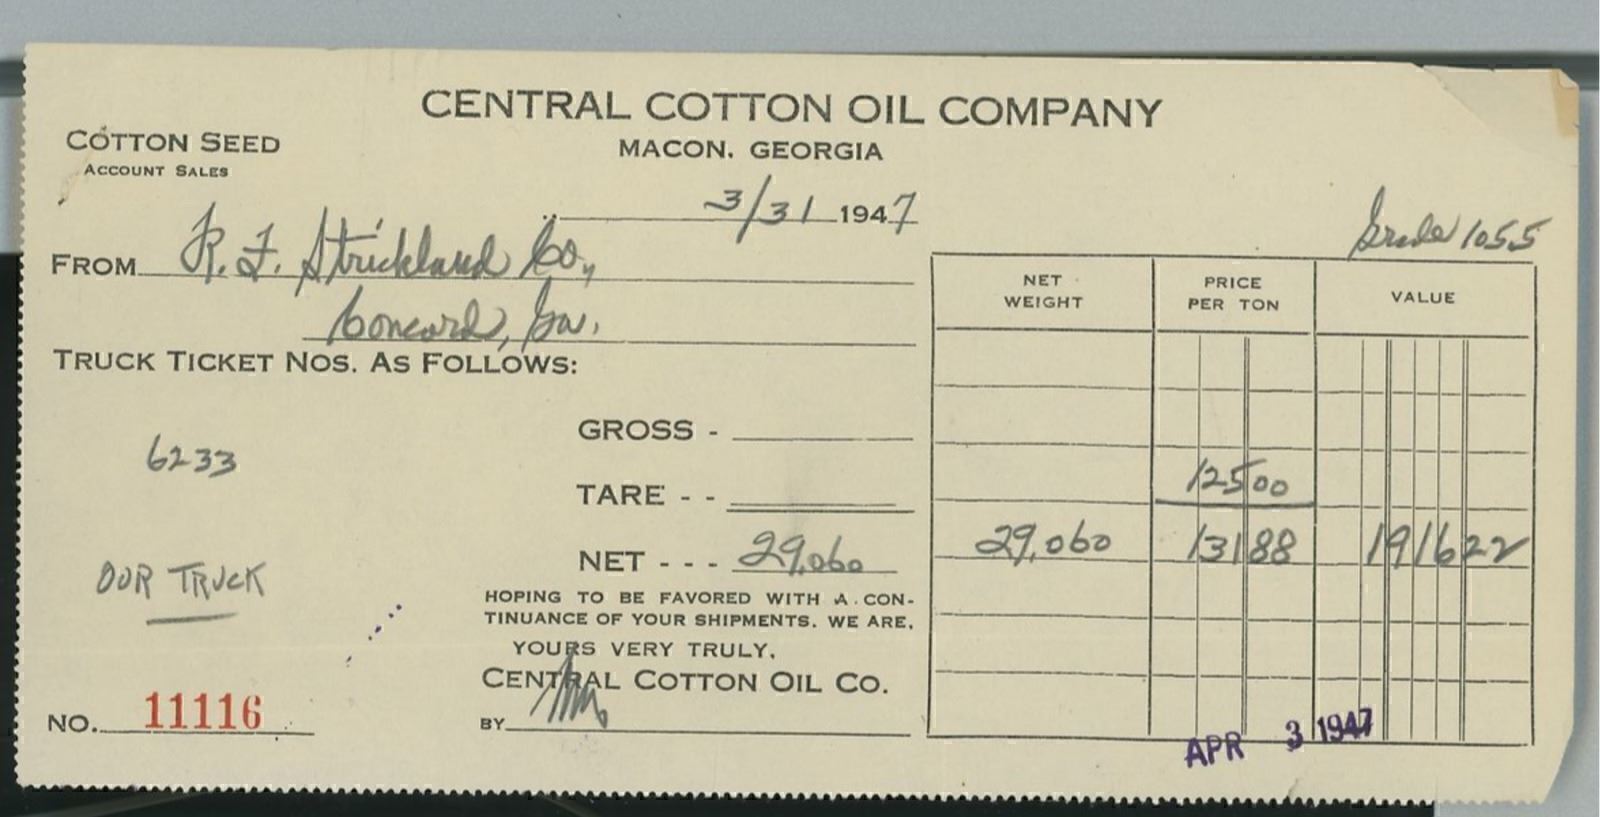 1947 Central Cotton Oil Company Macon Georgia Cotton Seed Invoice 386